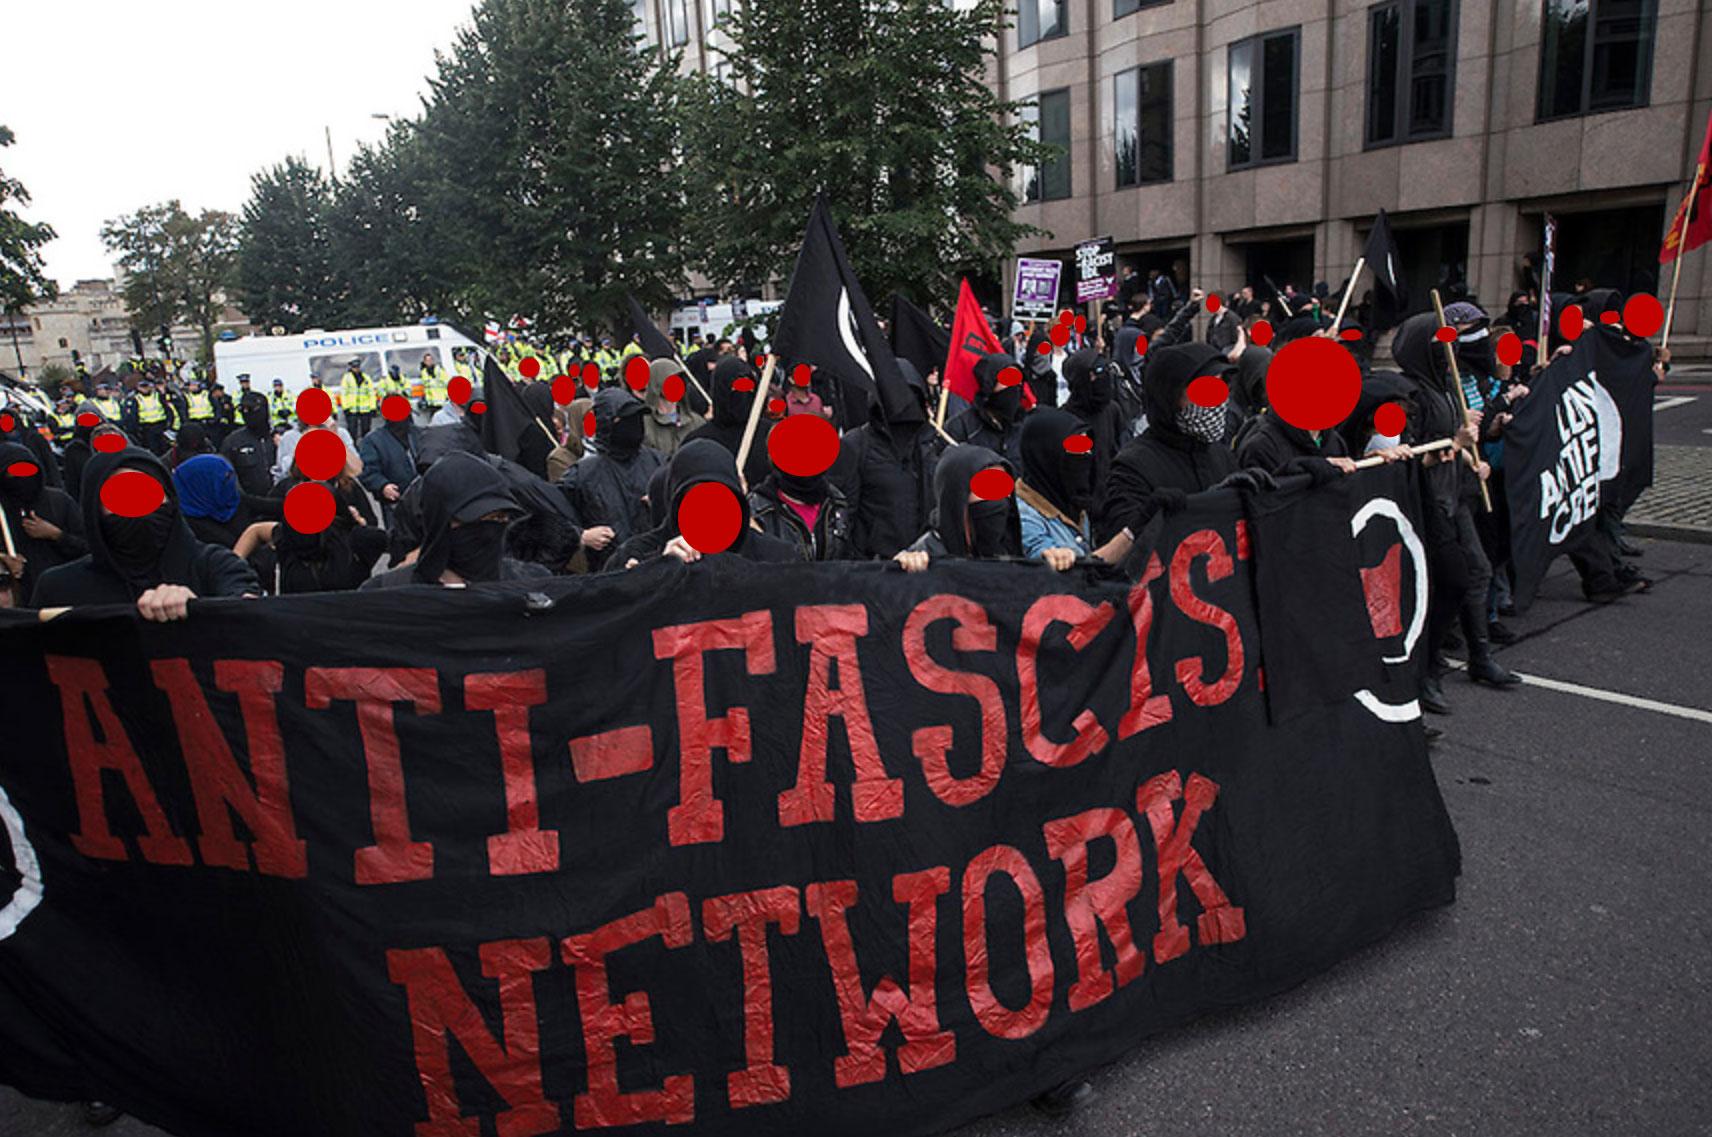 b-g-bidas-gerakan-anti-fasis-en-5.jpg